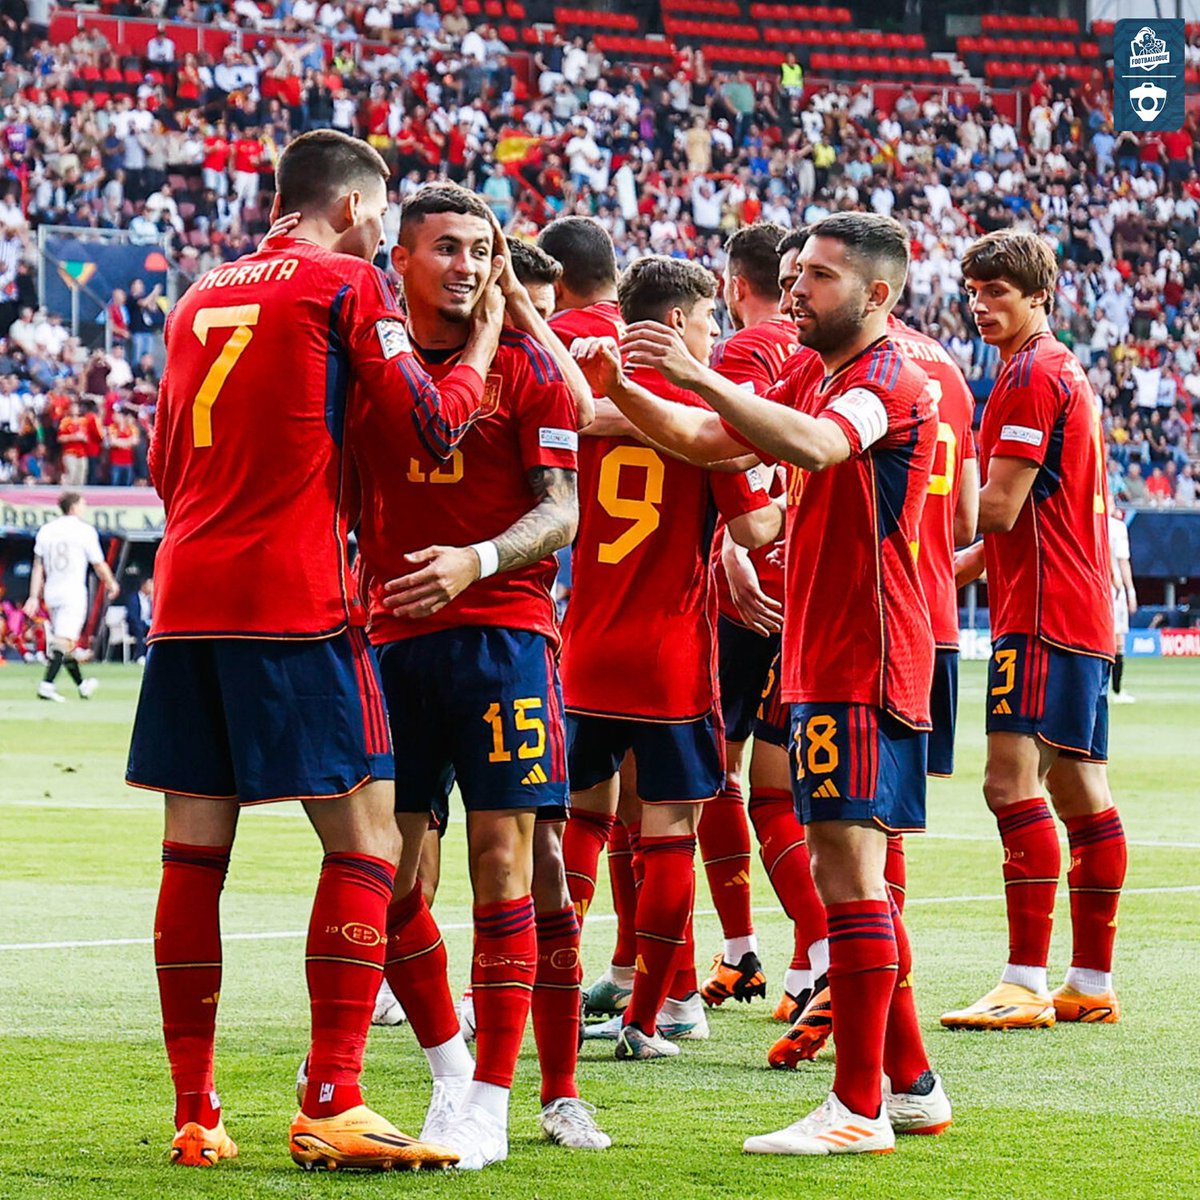 🏆🇪🇸1ere #LigueDesNations pour l'Espagne qui bat la Croatie aux TaB !

Ça nous fait un 3eme vainqueur différent en 3 éditions ! Il va être temps de faire le bilan de cette nouvelle compétition !